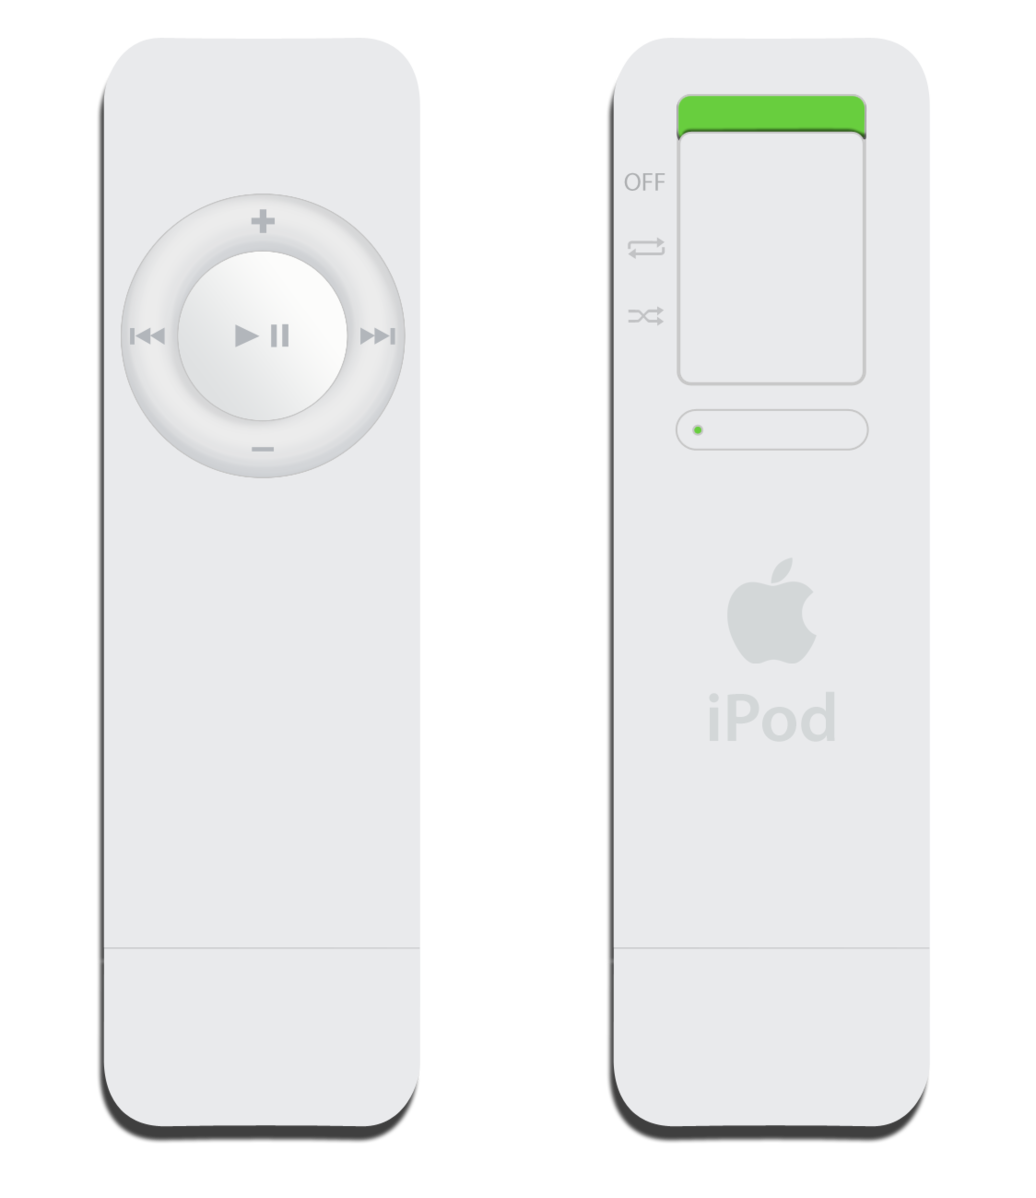 iPod shuffle 1G